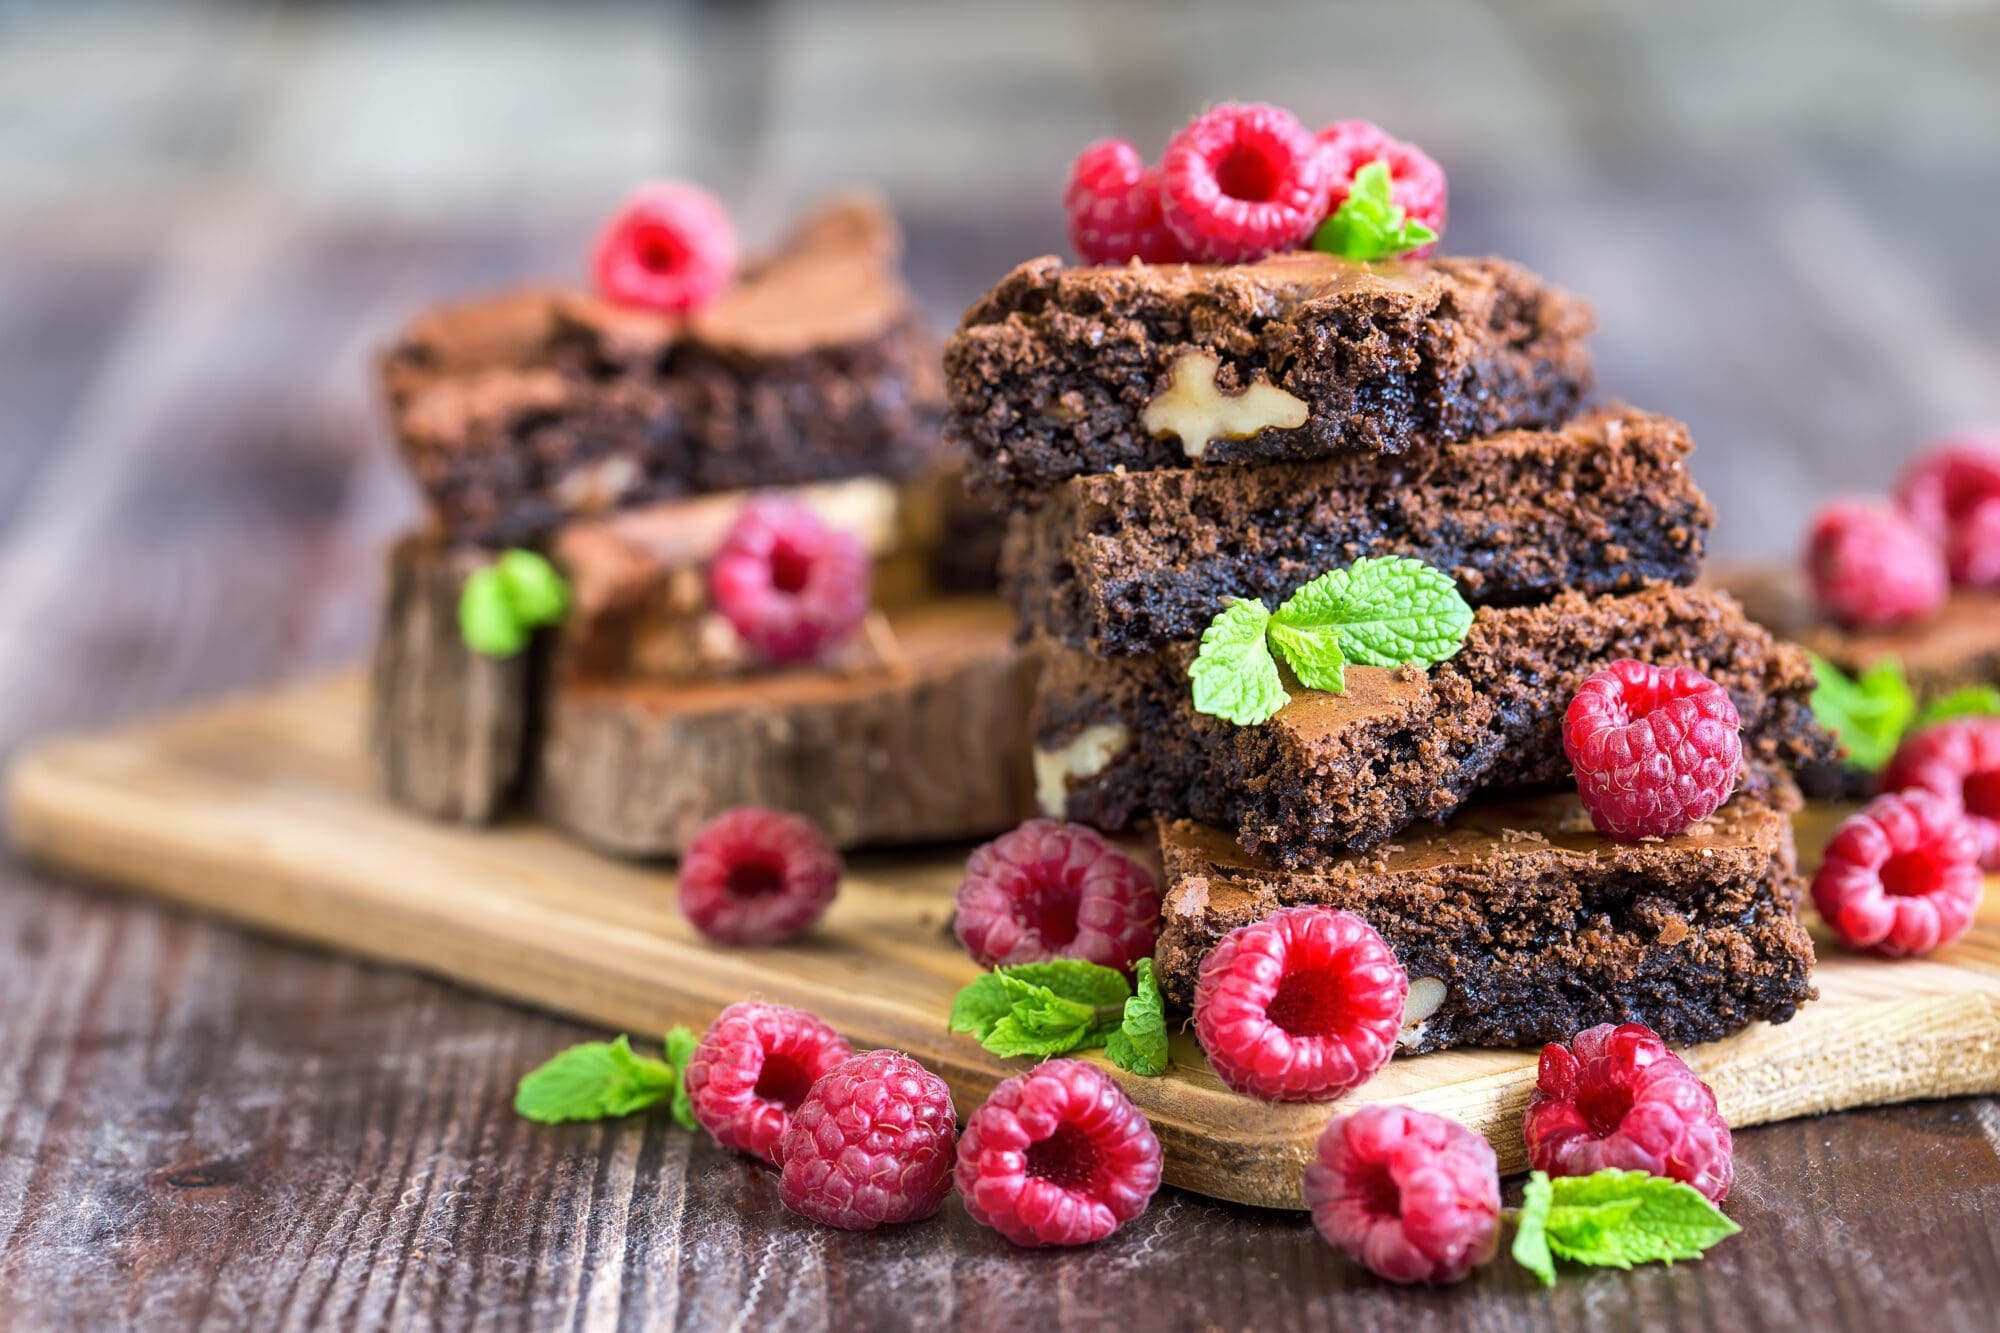 Healthy Brownies with raspberries by Kate Devine